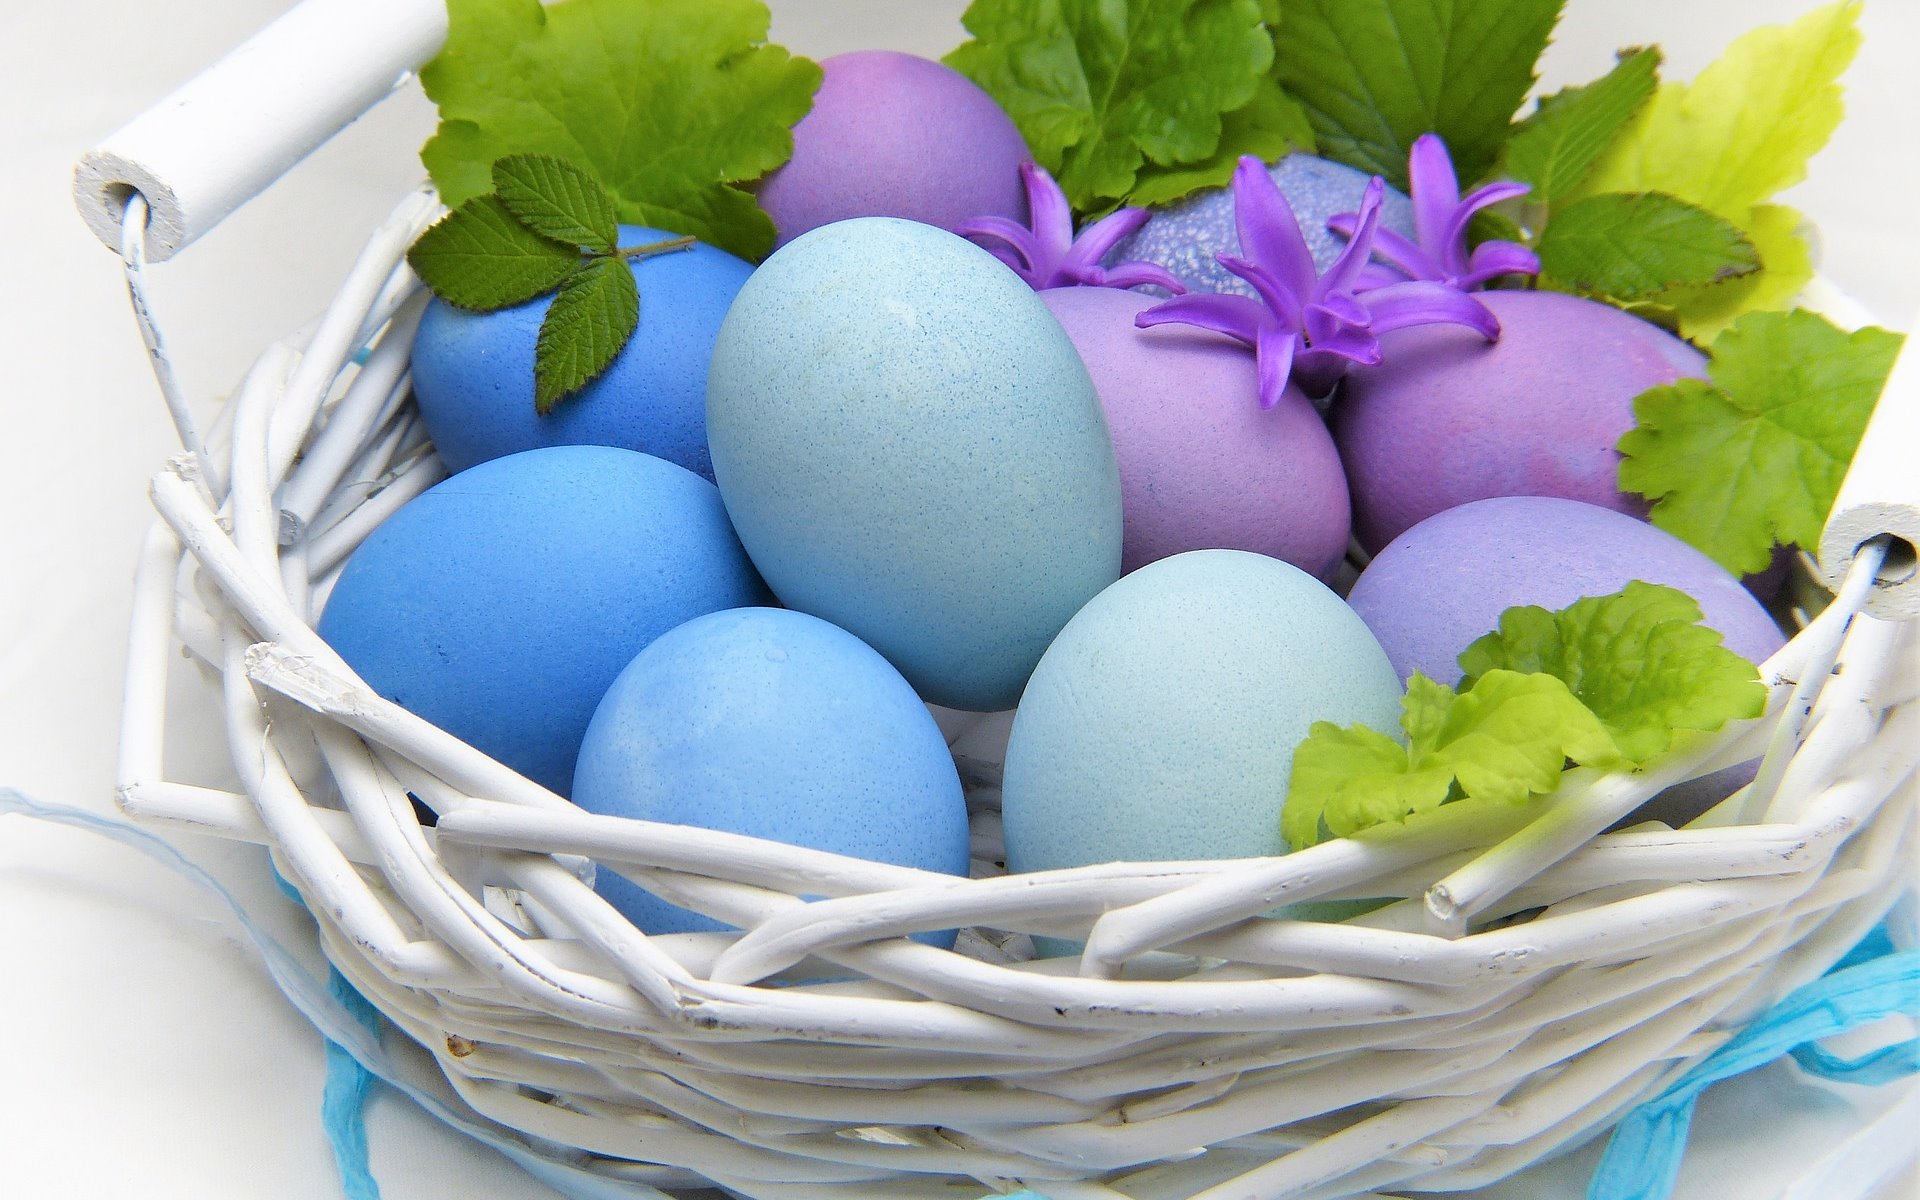 Wielkanocne jaja są symbolem życia, siły, miłości i płodności